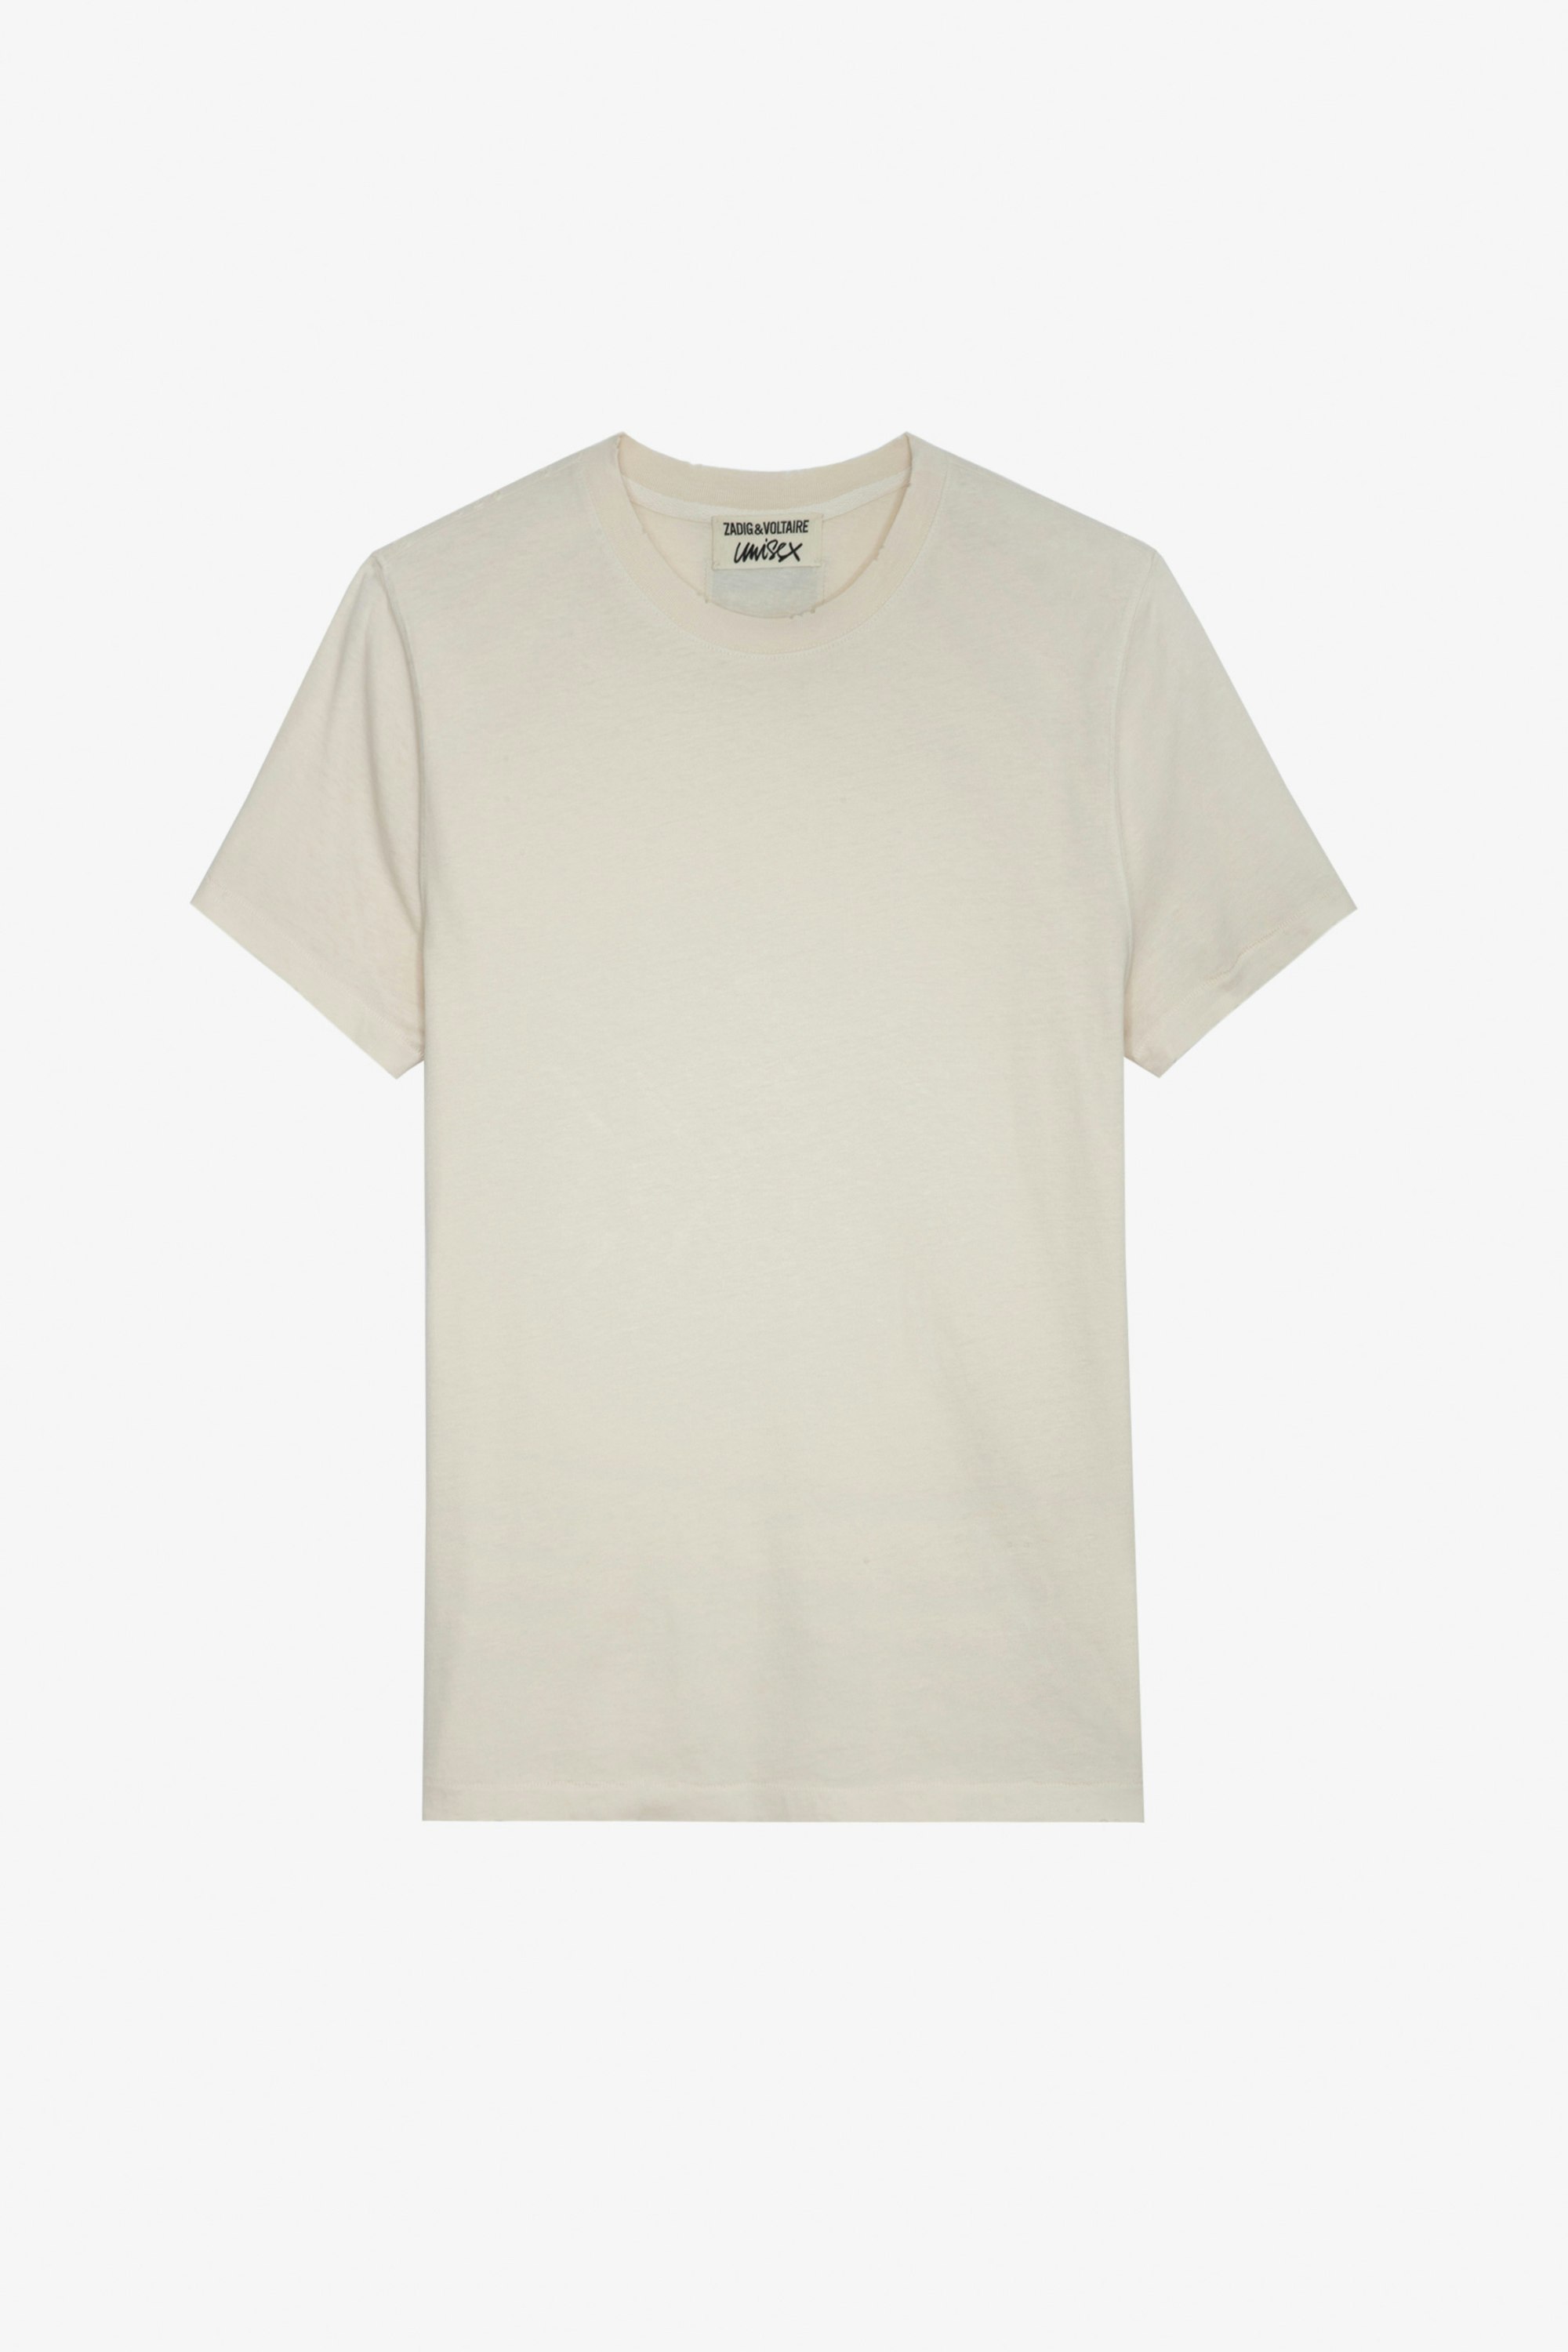 T-Shirt Jimmy - Unisex-T-Shirt aus ecrufarbener Baumwolle mit Markenlabel-Badge auf der Rückseite.